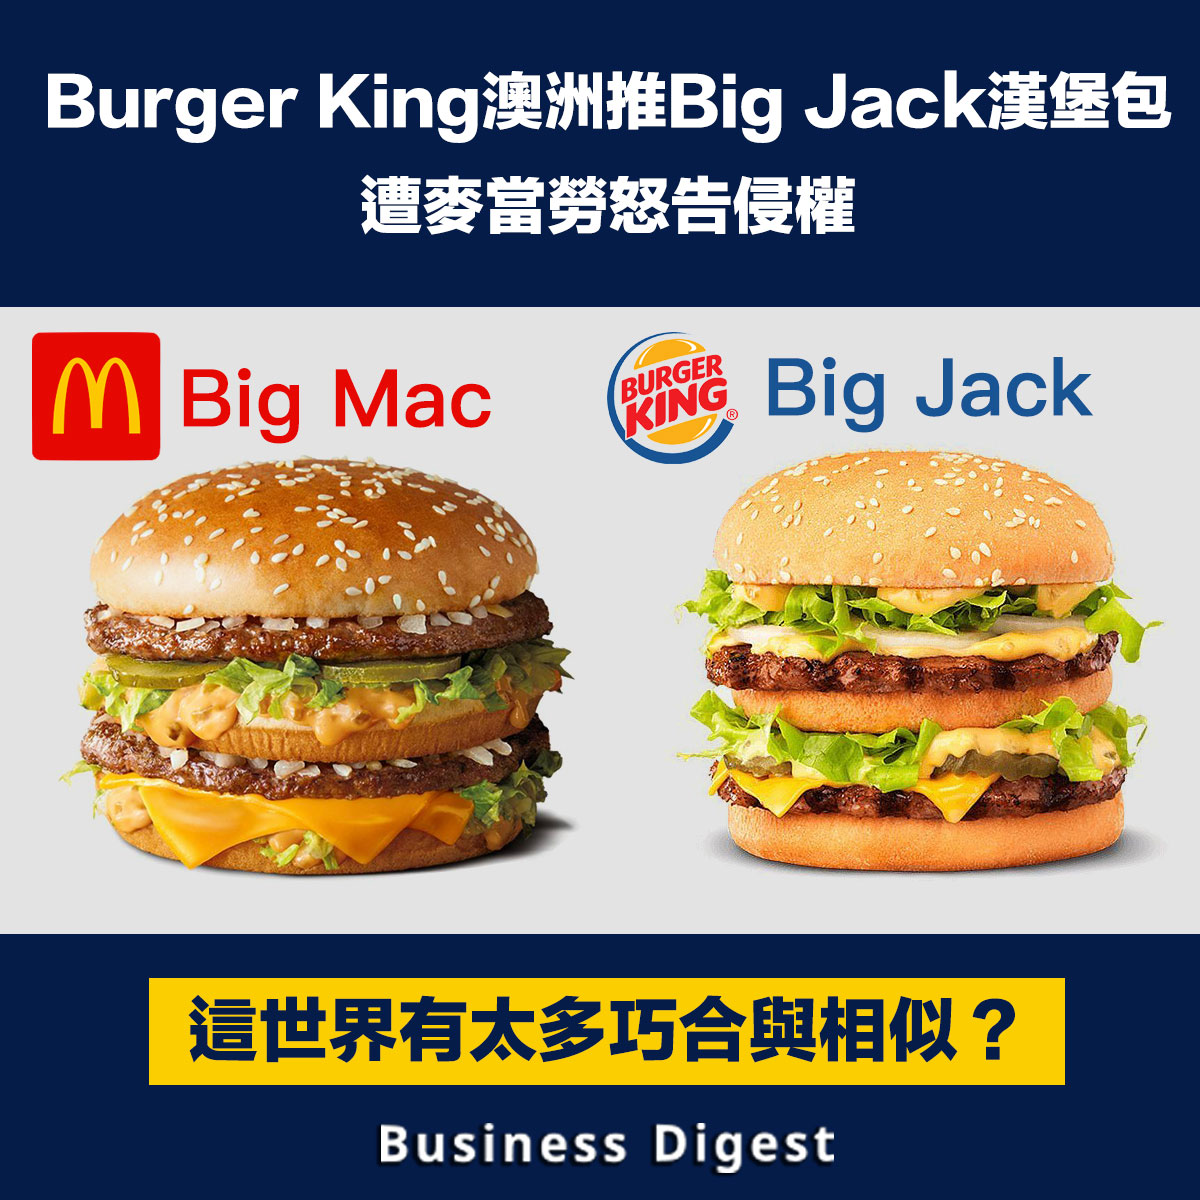 【商業熱話】Burger King澳洲推Big Jack漢堡包，遭麥當勞怒告侵權